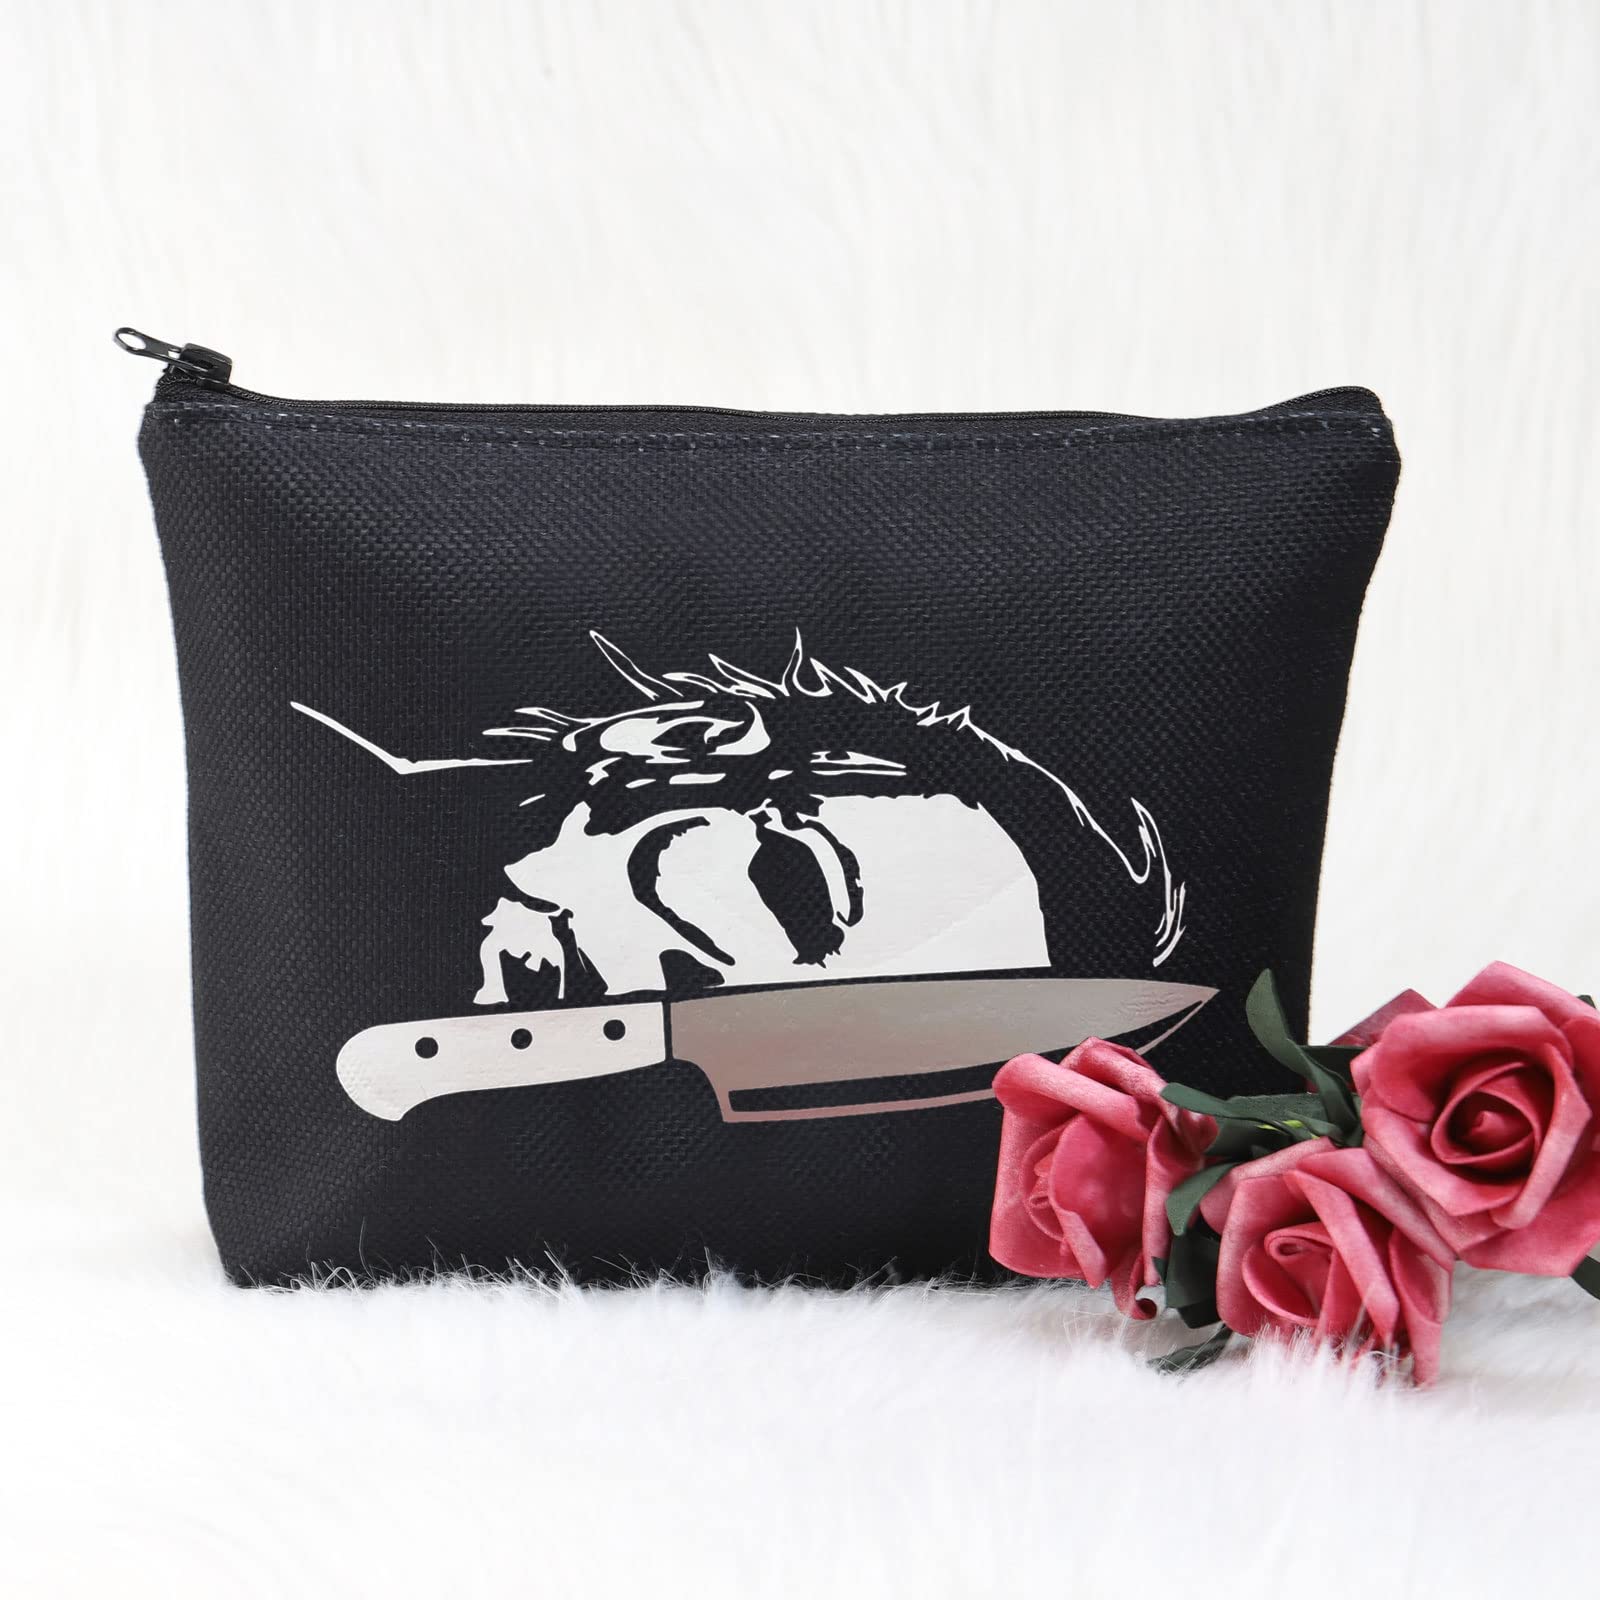 POFULL Horror Lover Gift Horror Movie Merchandise Horror Friends Gift Killer Makeup Bag (M Horror bag)